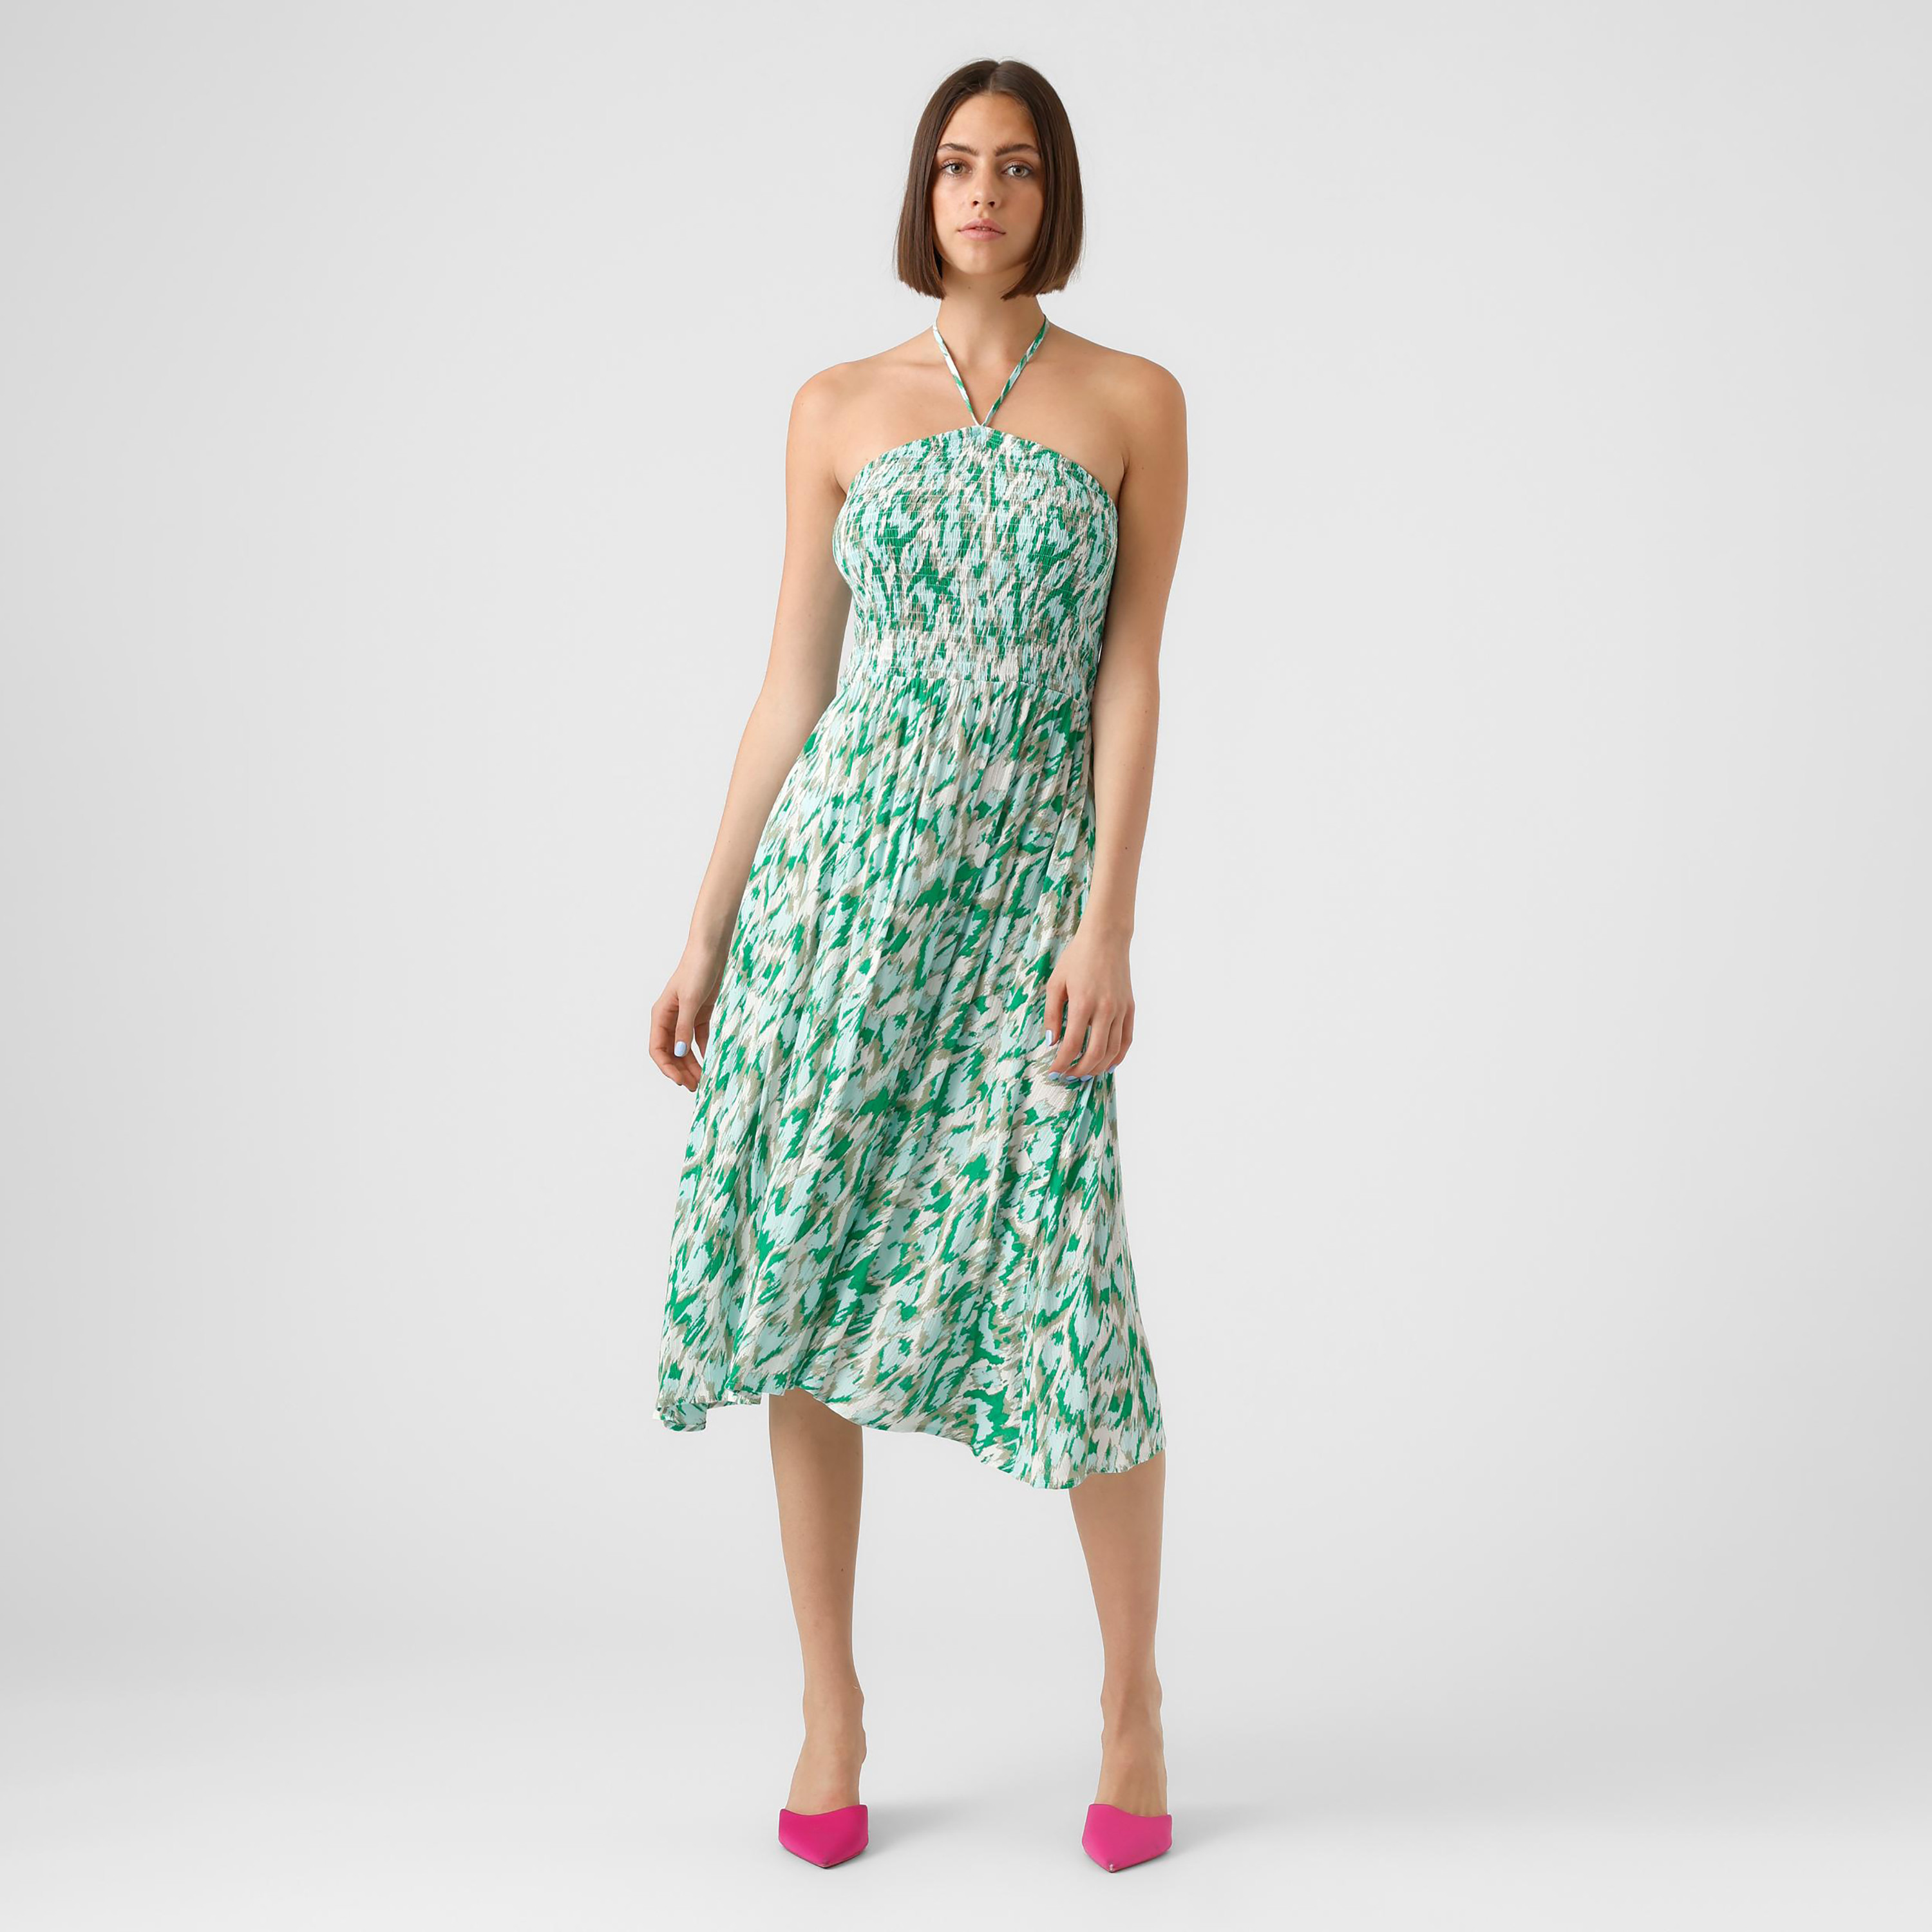 ASOS Vero Moda Wrap Dress | Wrap dress, Clothes design, Dress